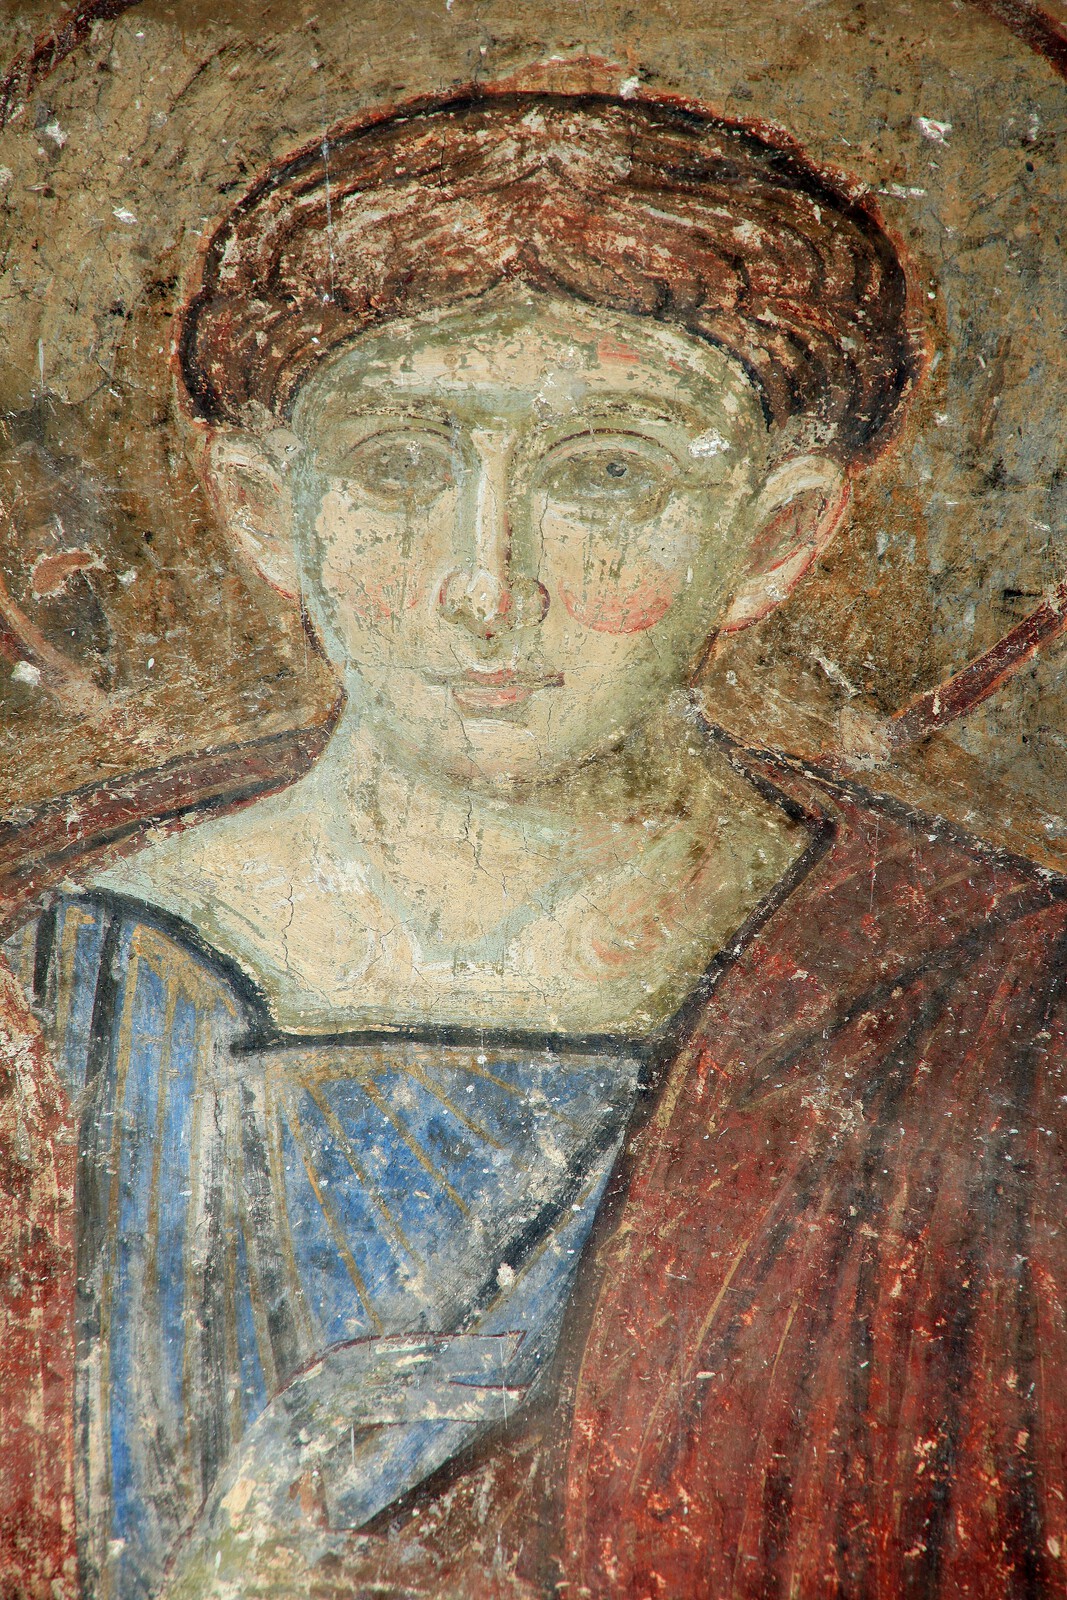 St. Stephen the Protomartyr, detail